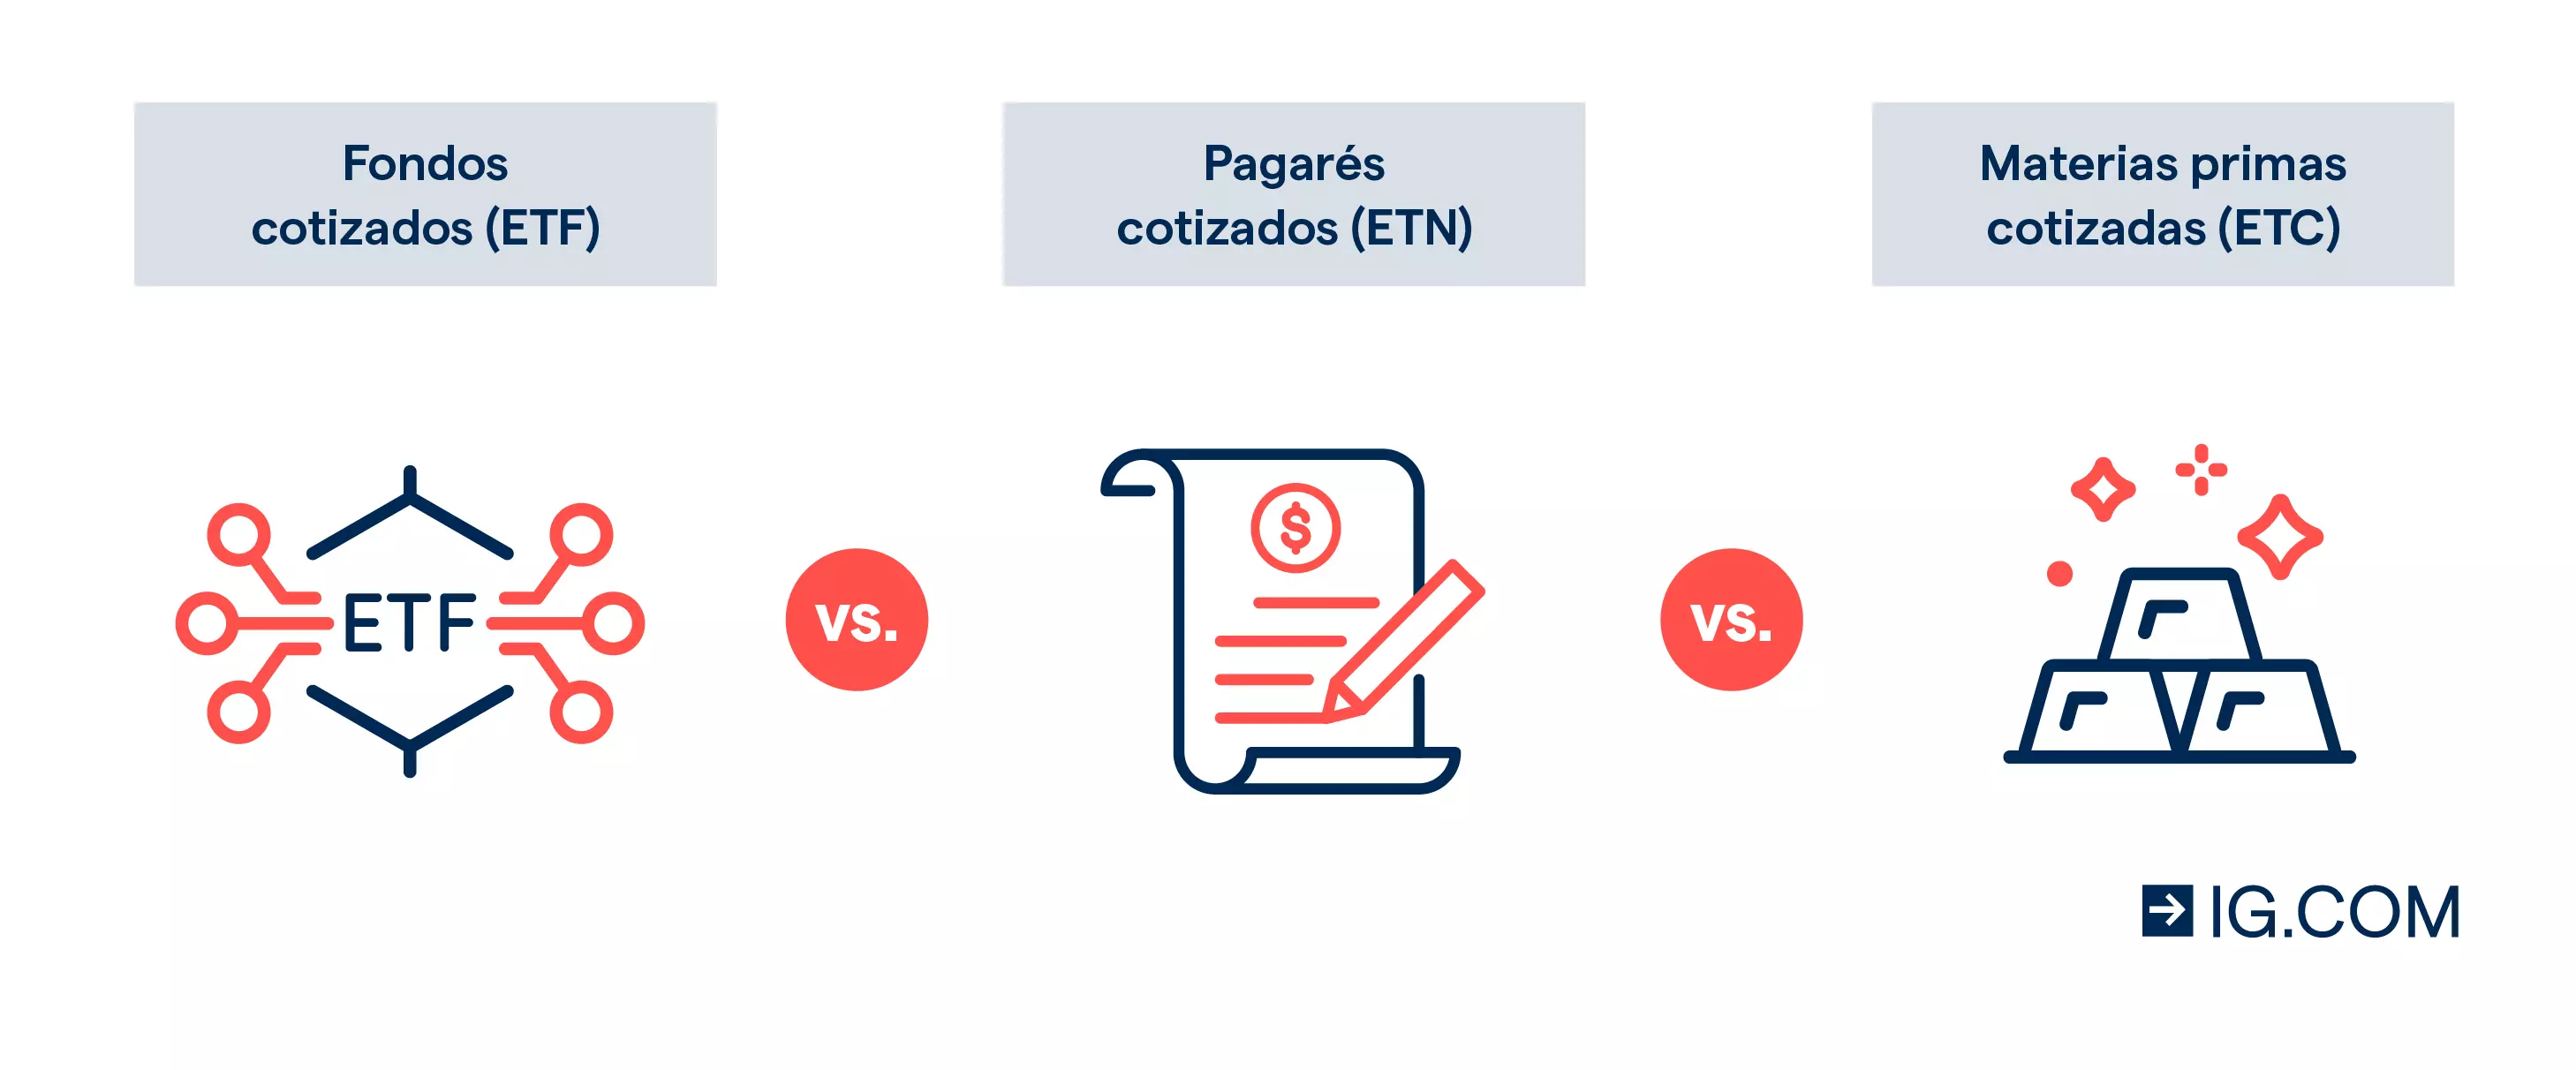 ETF frente a ETN frente a ETC Los ETF, ETN y ETC son algunos de los tipos de productos cotizados más populares del mercado. Aunque pueden presentar similitudes, hay algunas diferencias que cabe tener en cuenta. A continuación, encontraras una comparación básica de las principales características de estos productos.